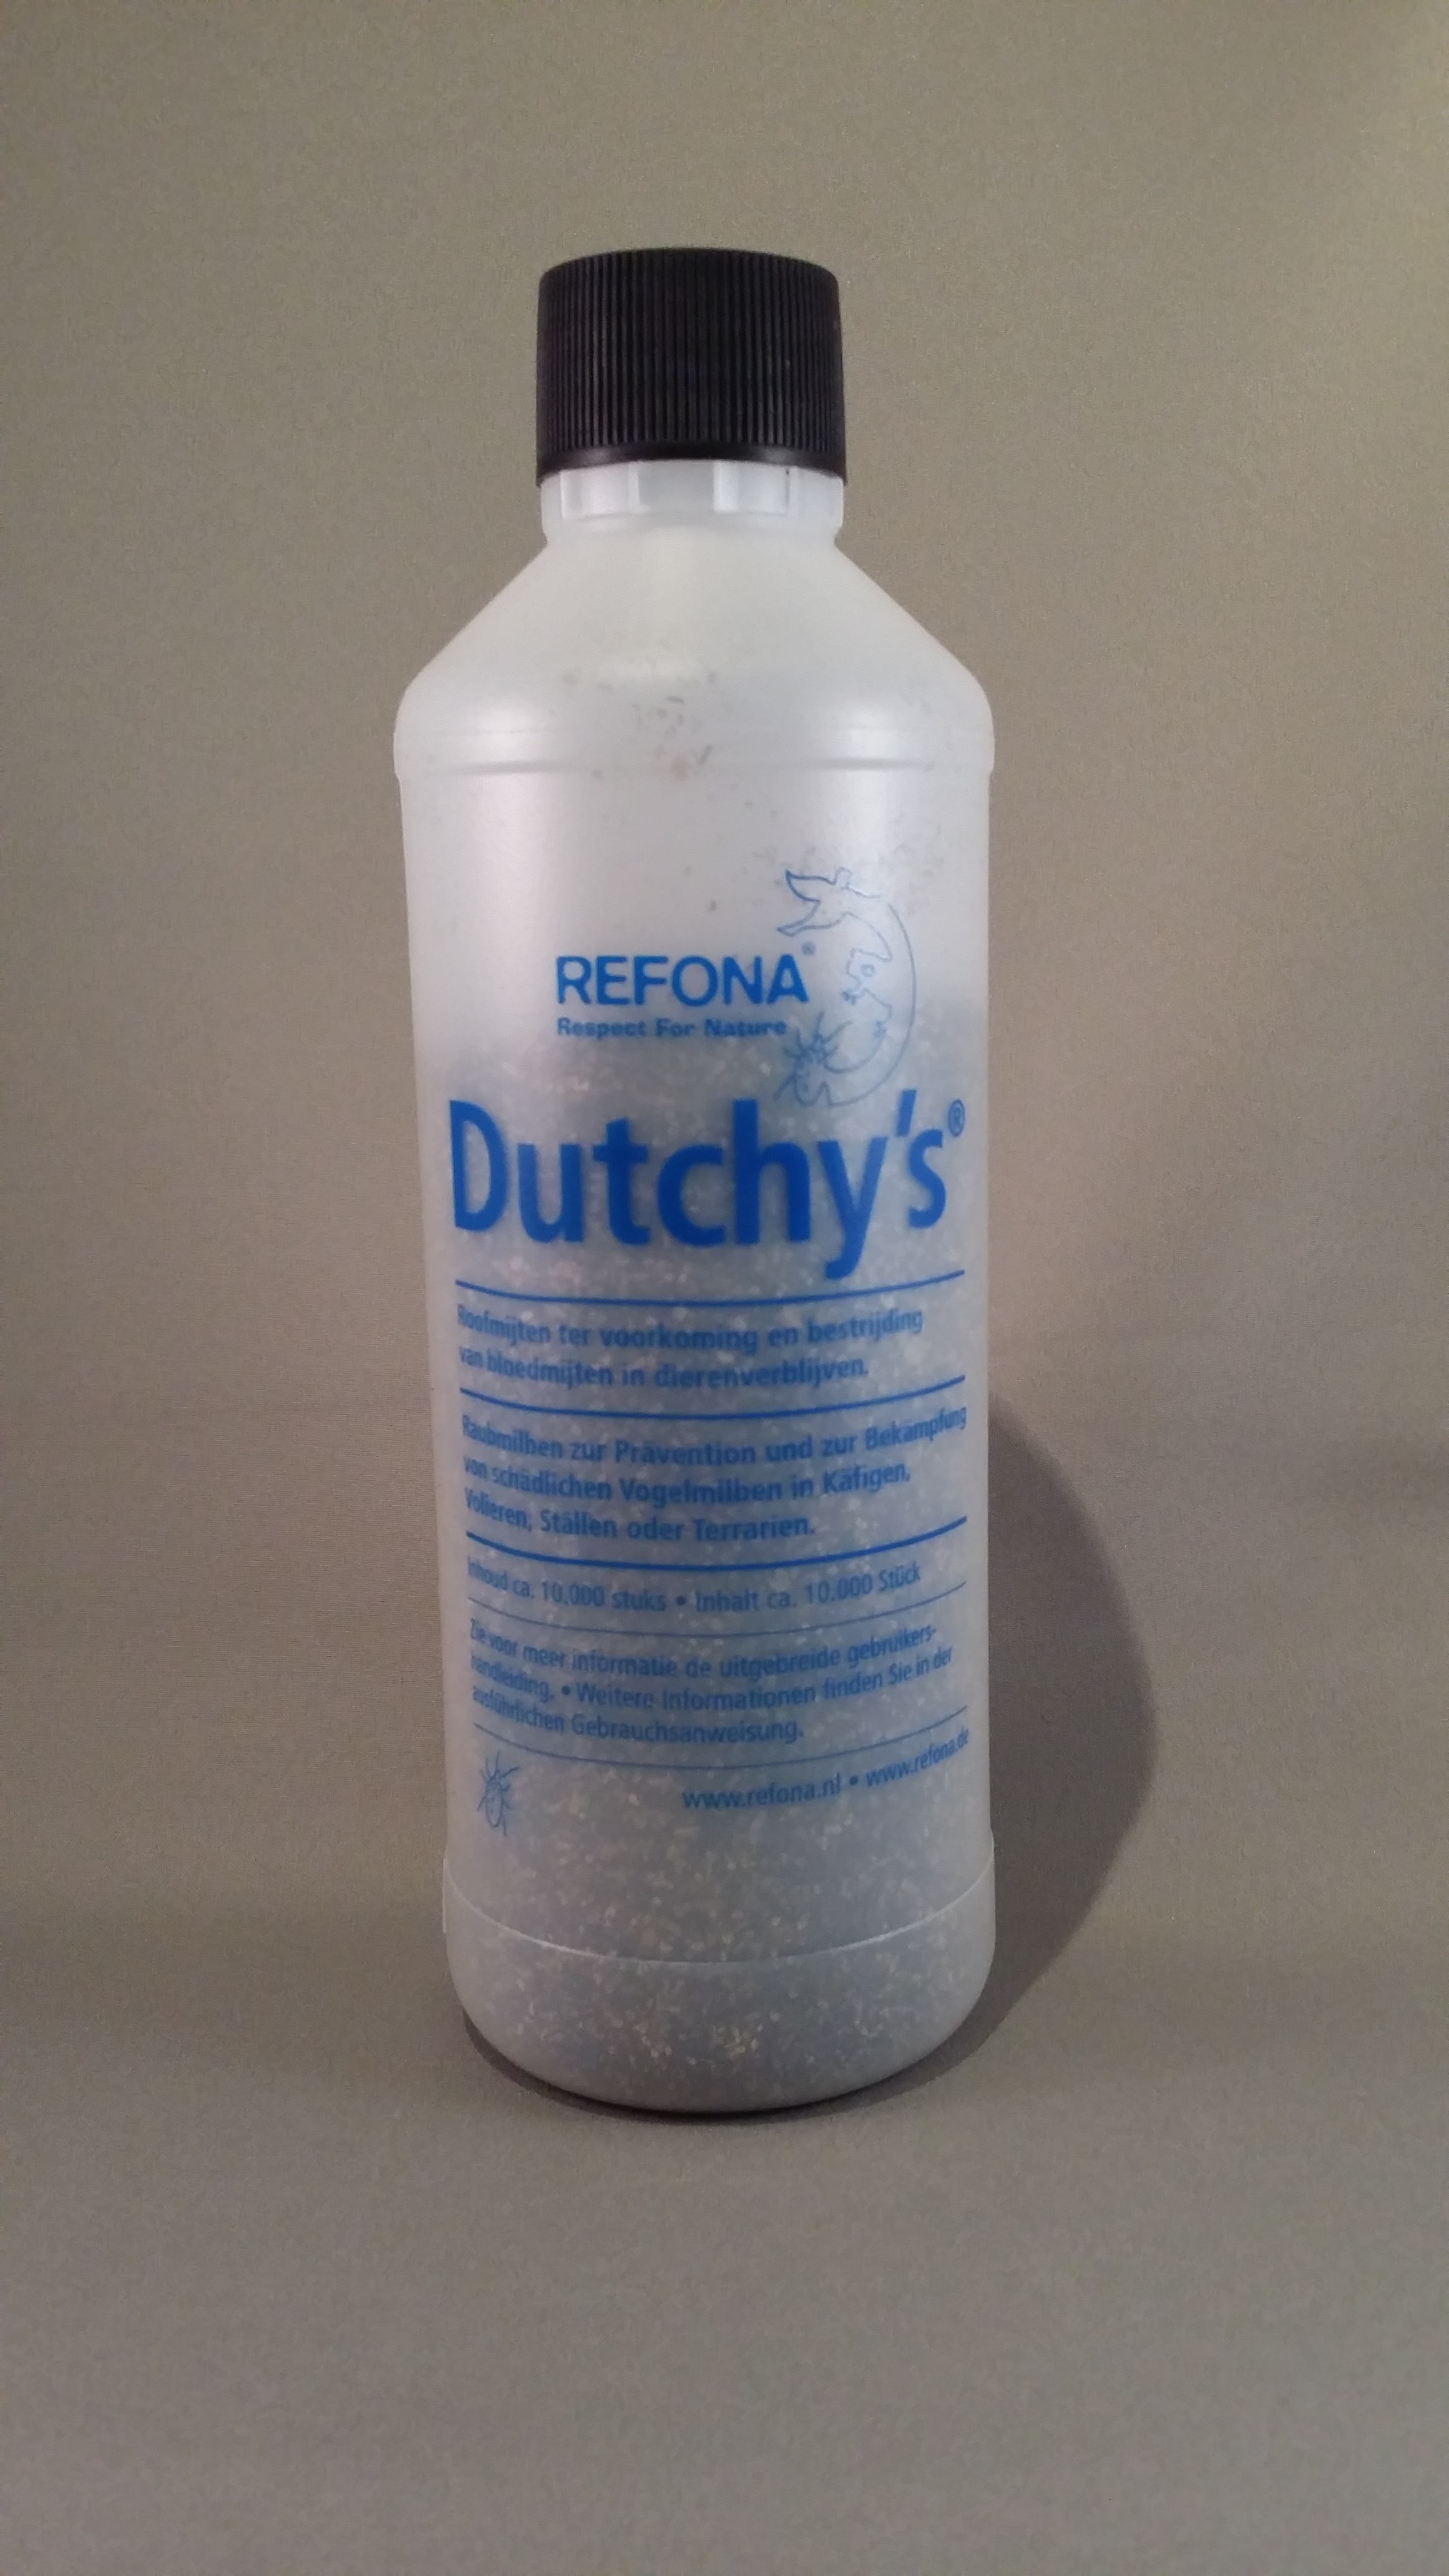 Dutchy's® (5.000)